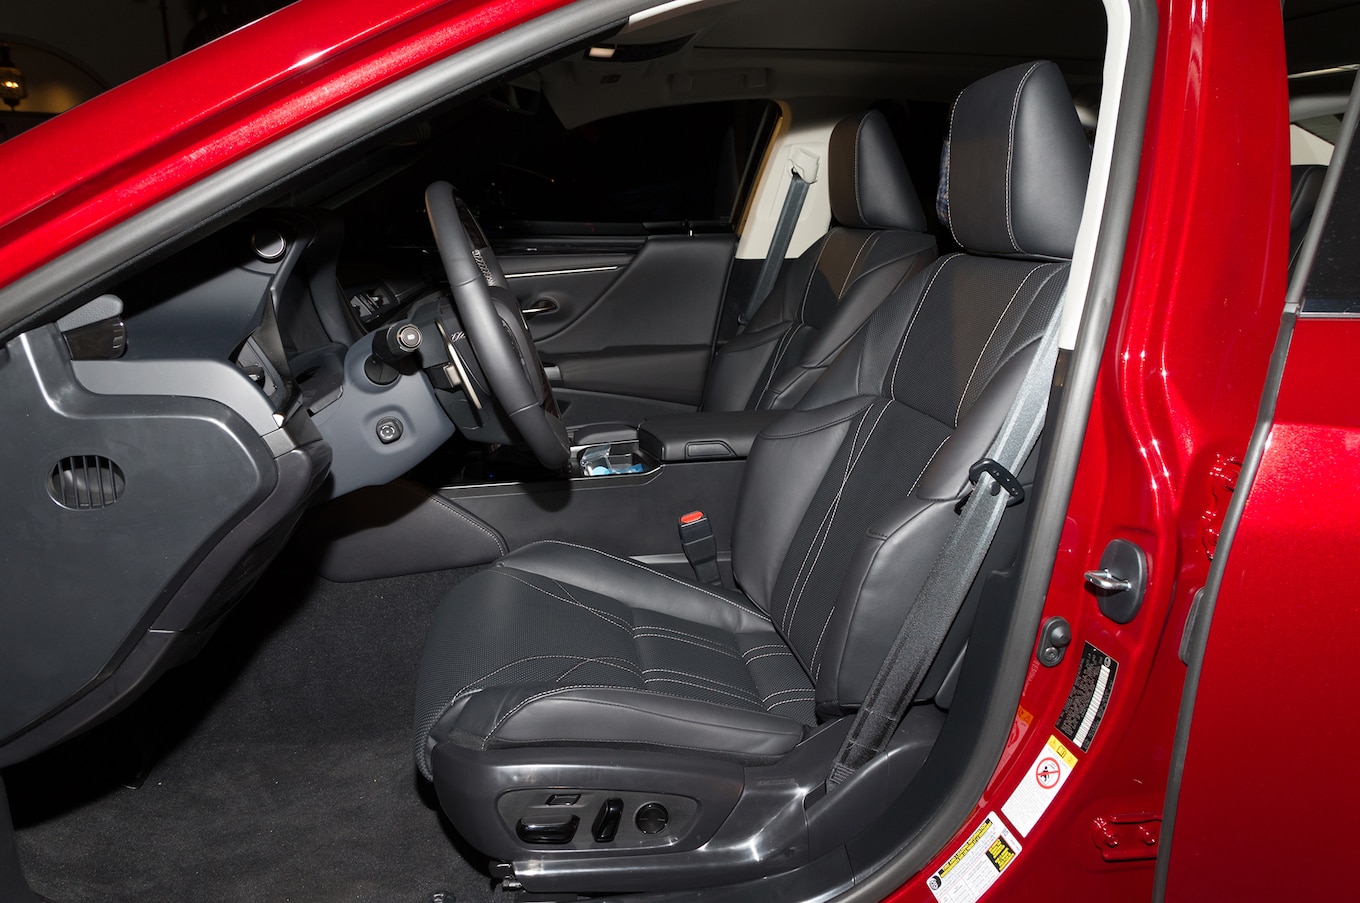 2019-Lexus-ES-interior-from-side.jpg